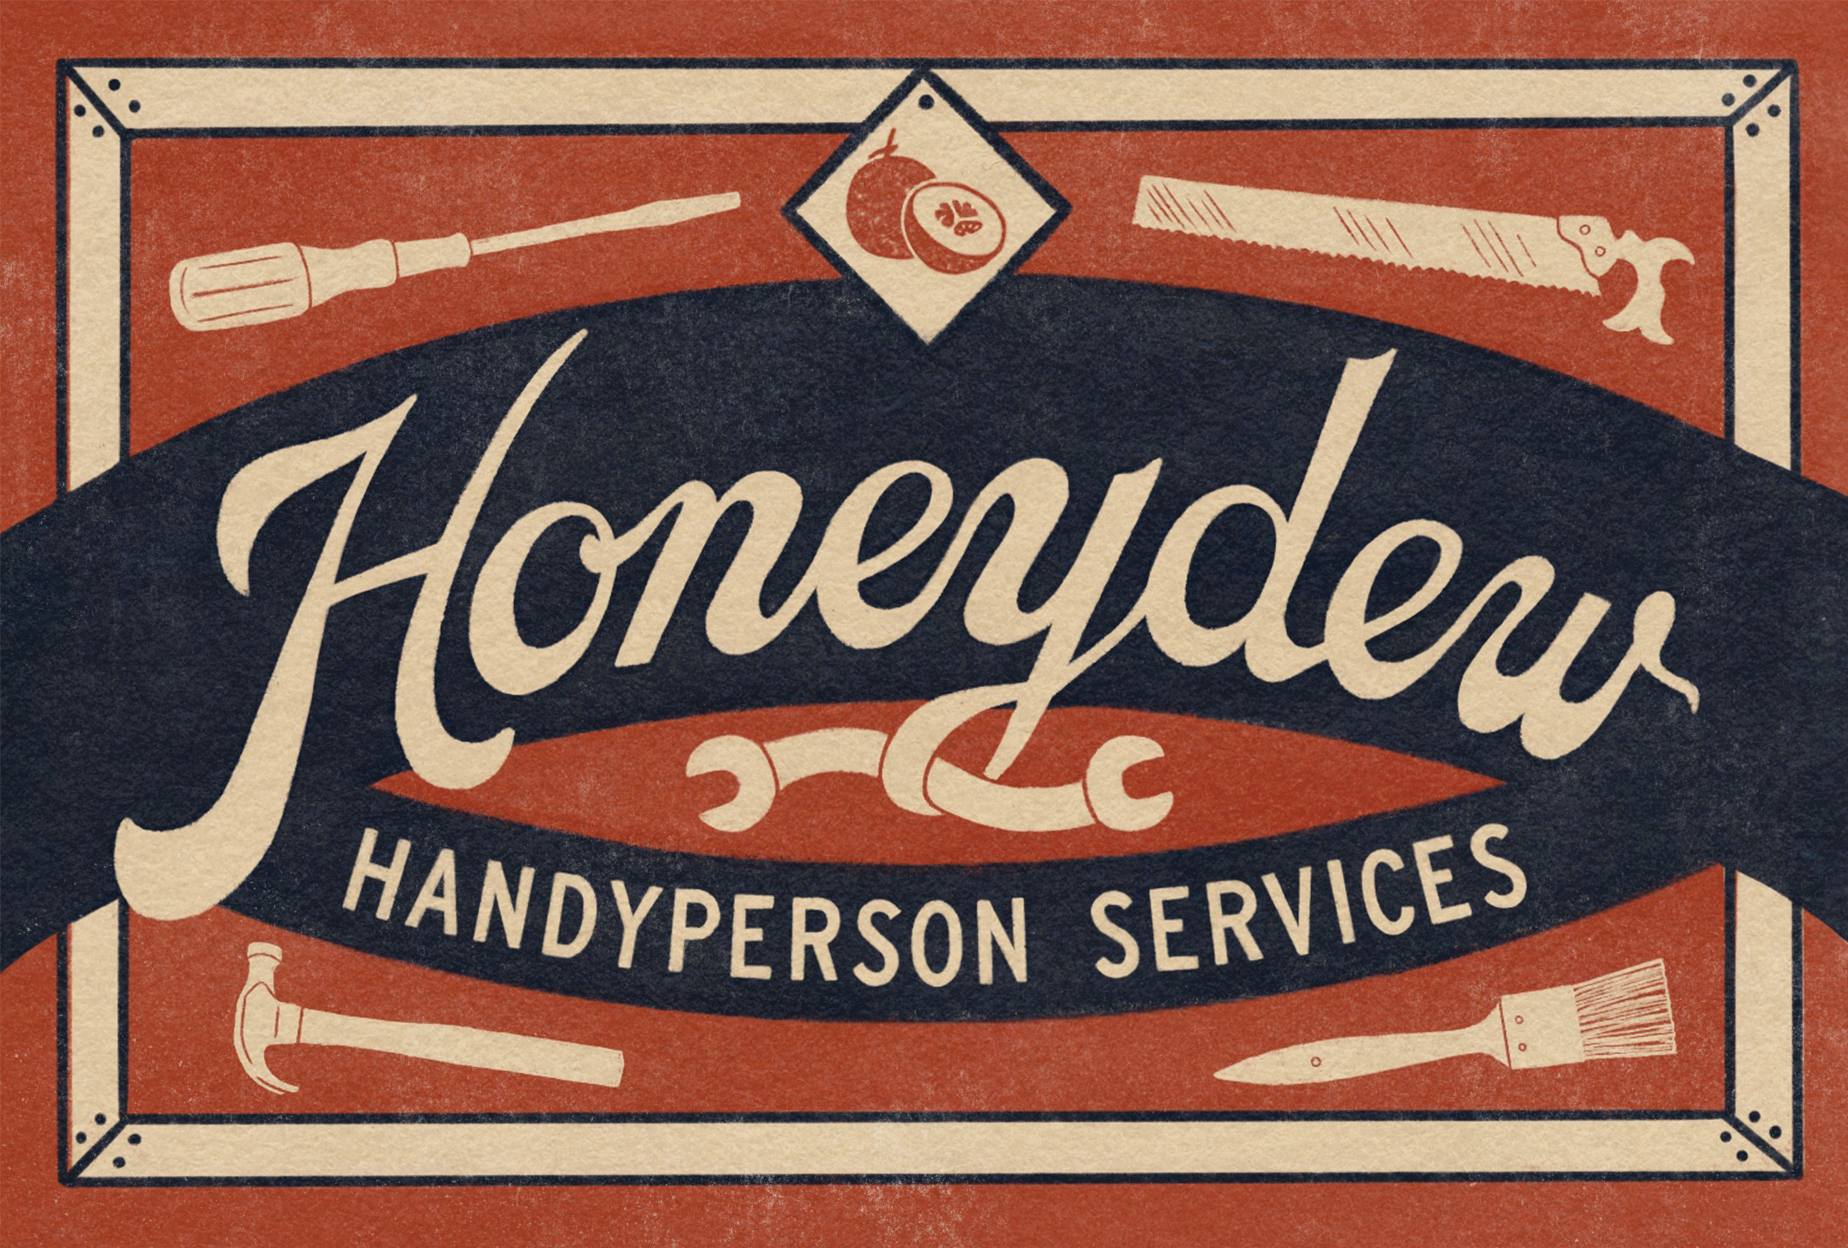 Honeydew Handyperson Services